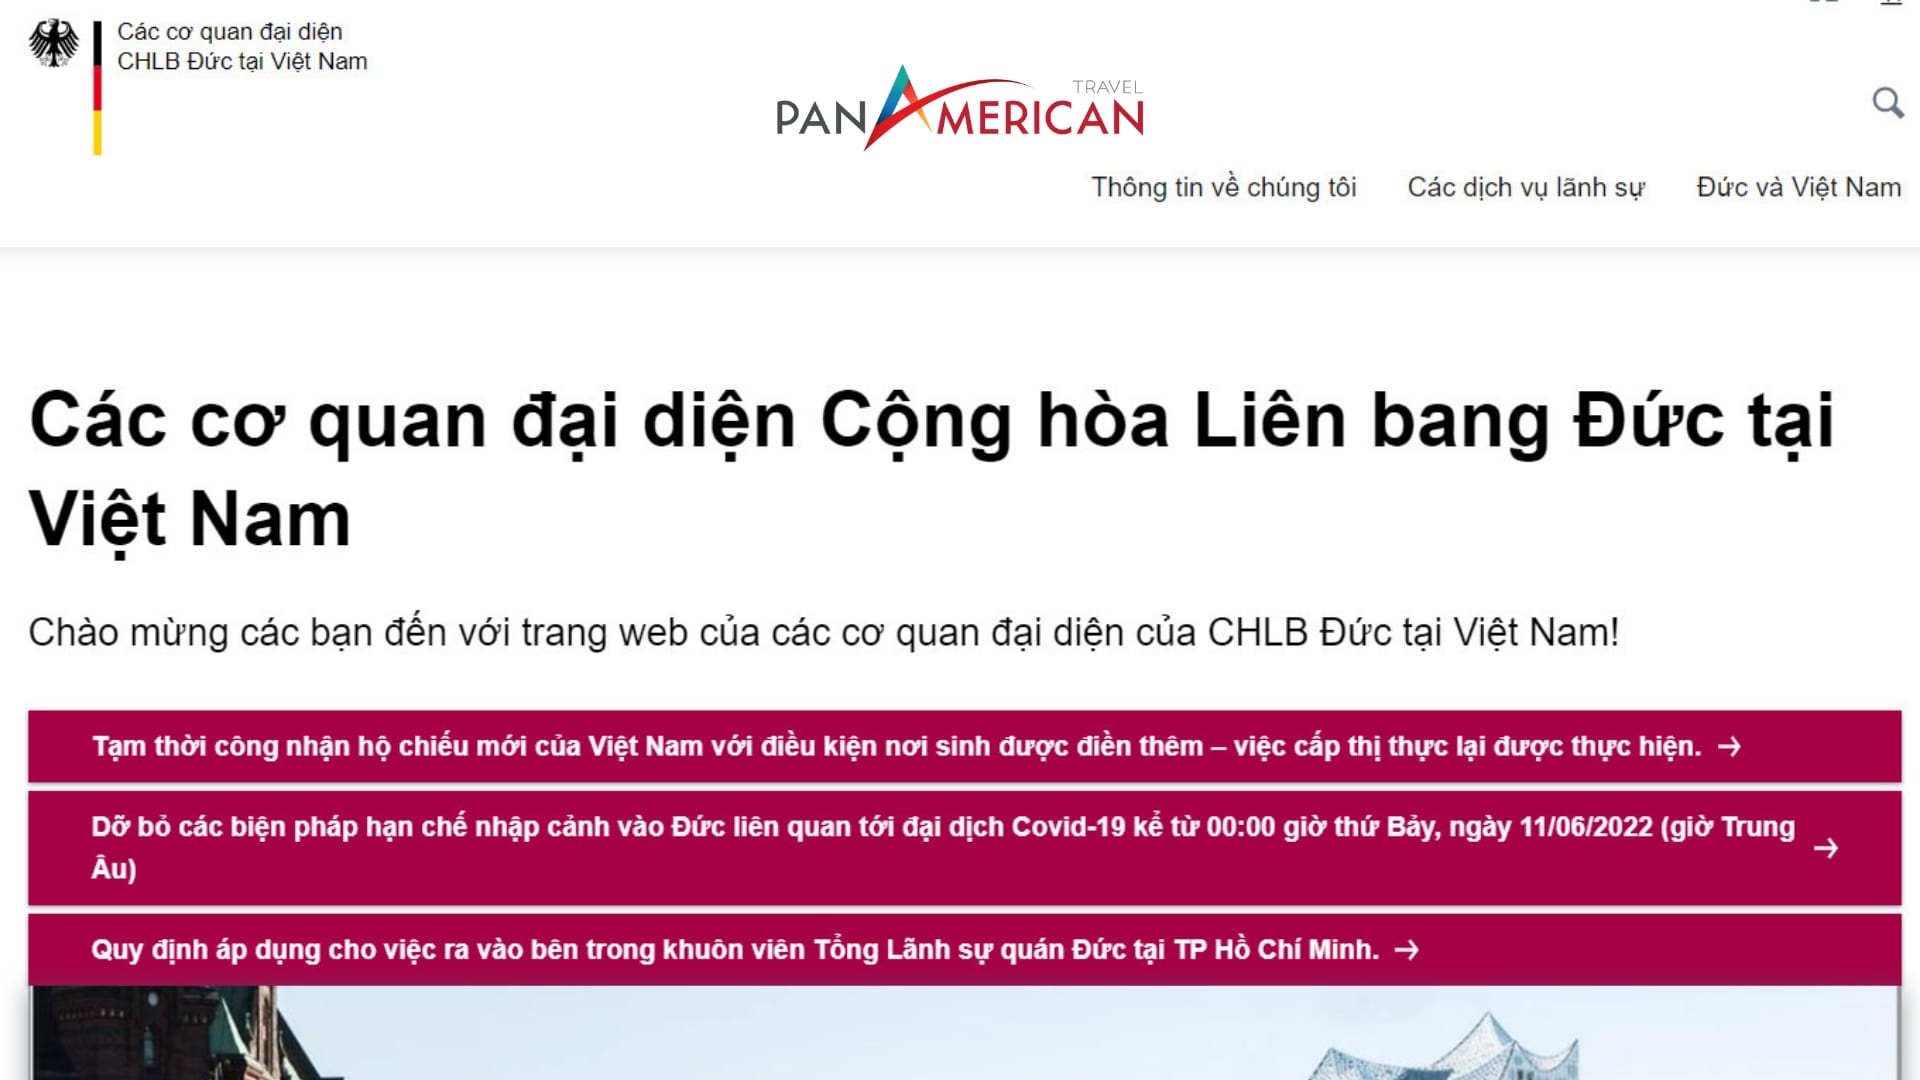 Website chính thức của đại diện CHLB Đức tại Việt Nam